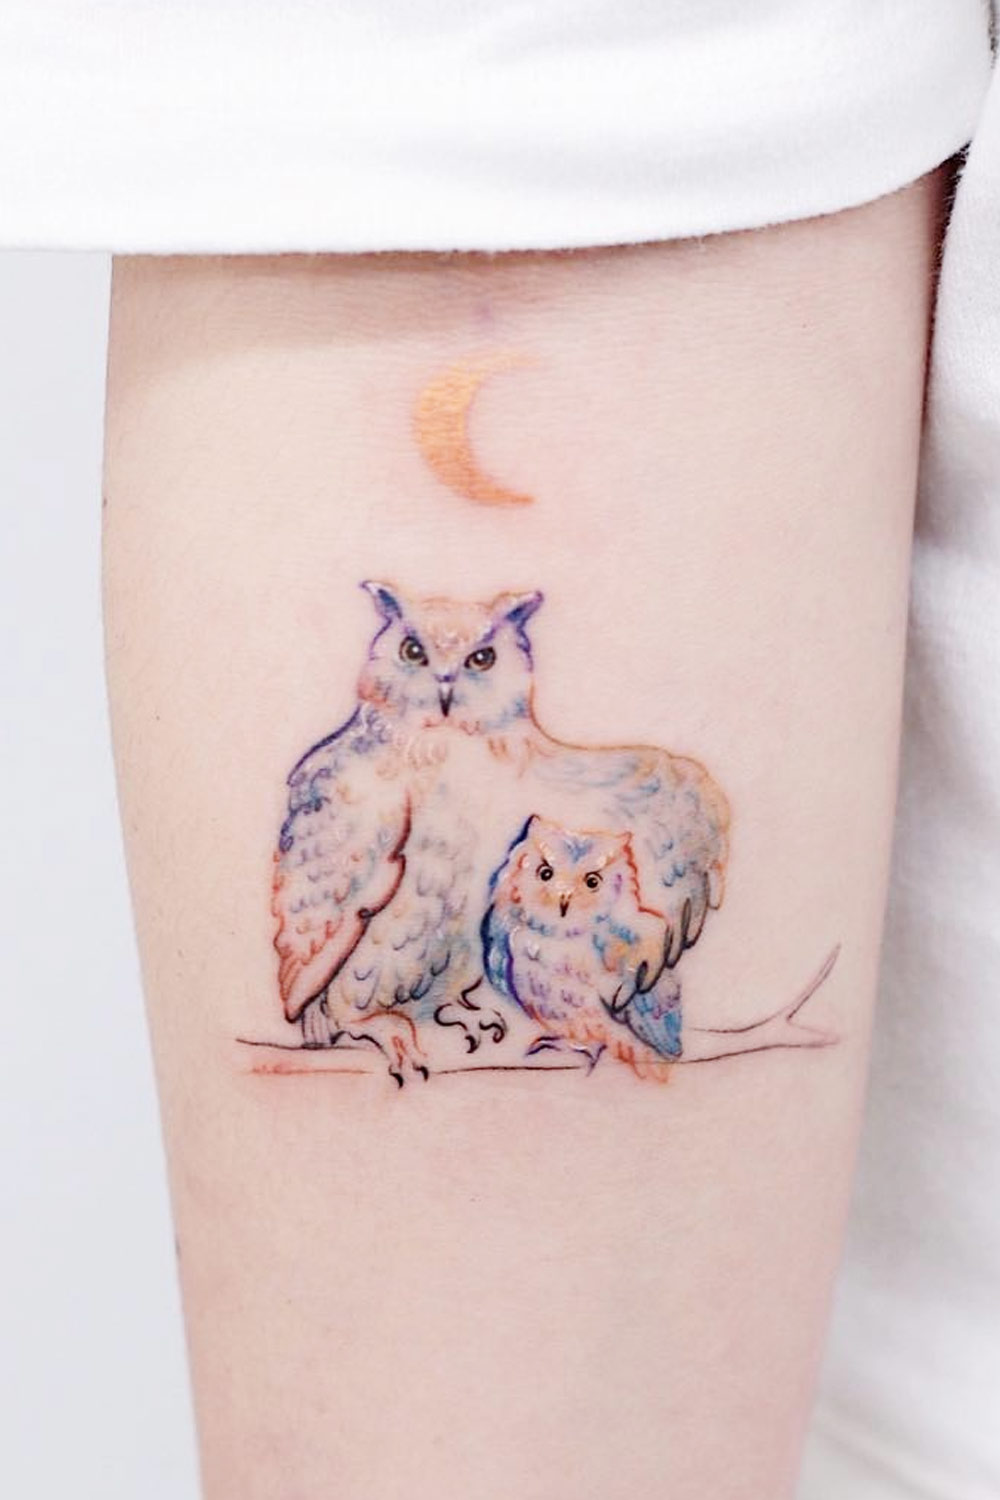 Small Cute Owl Tattoo on Arm - Best Tattoo Ideas Gallery